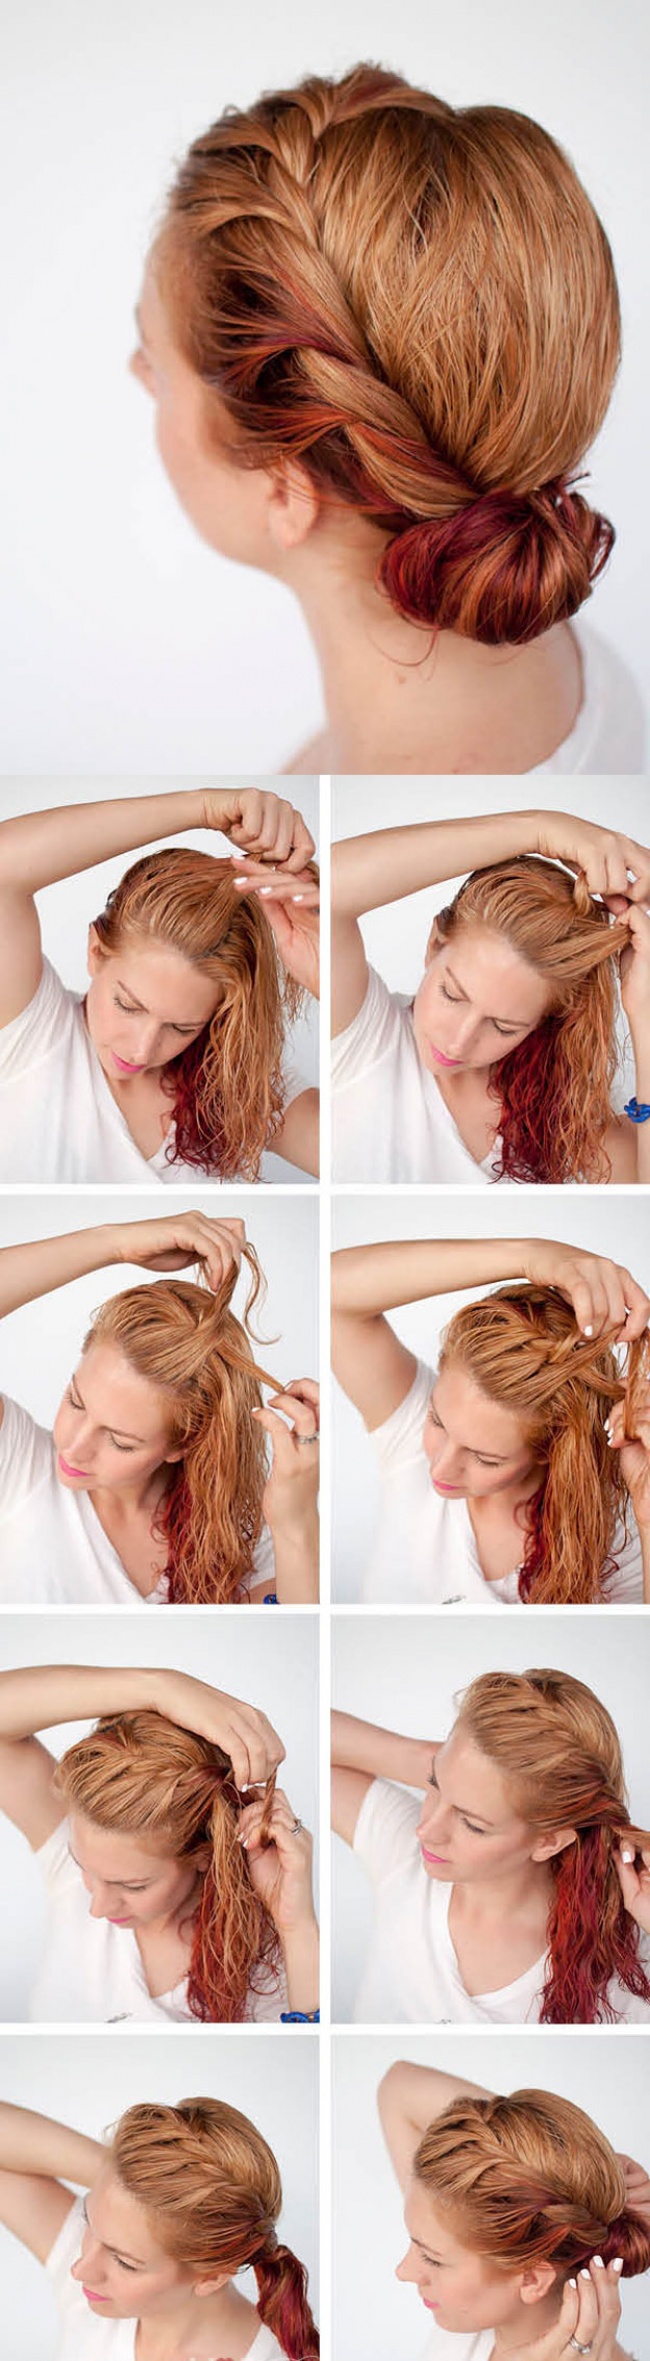 Deset jednostavnih frizura koje možete napraviti za samo 5 minuta!